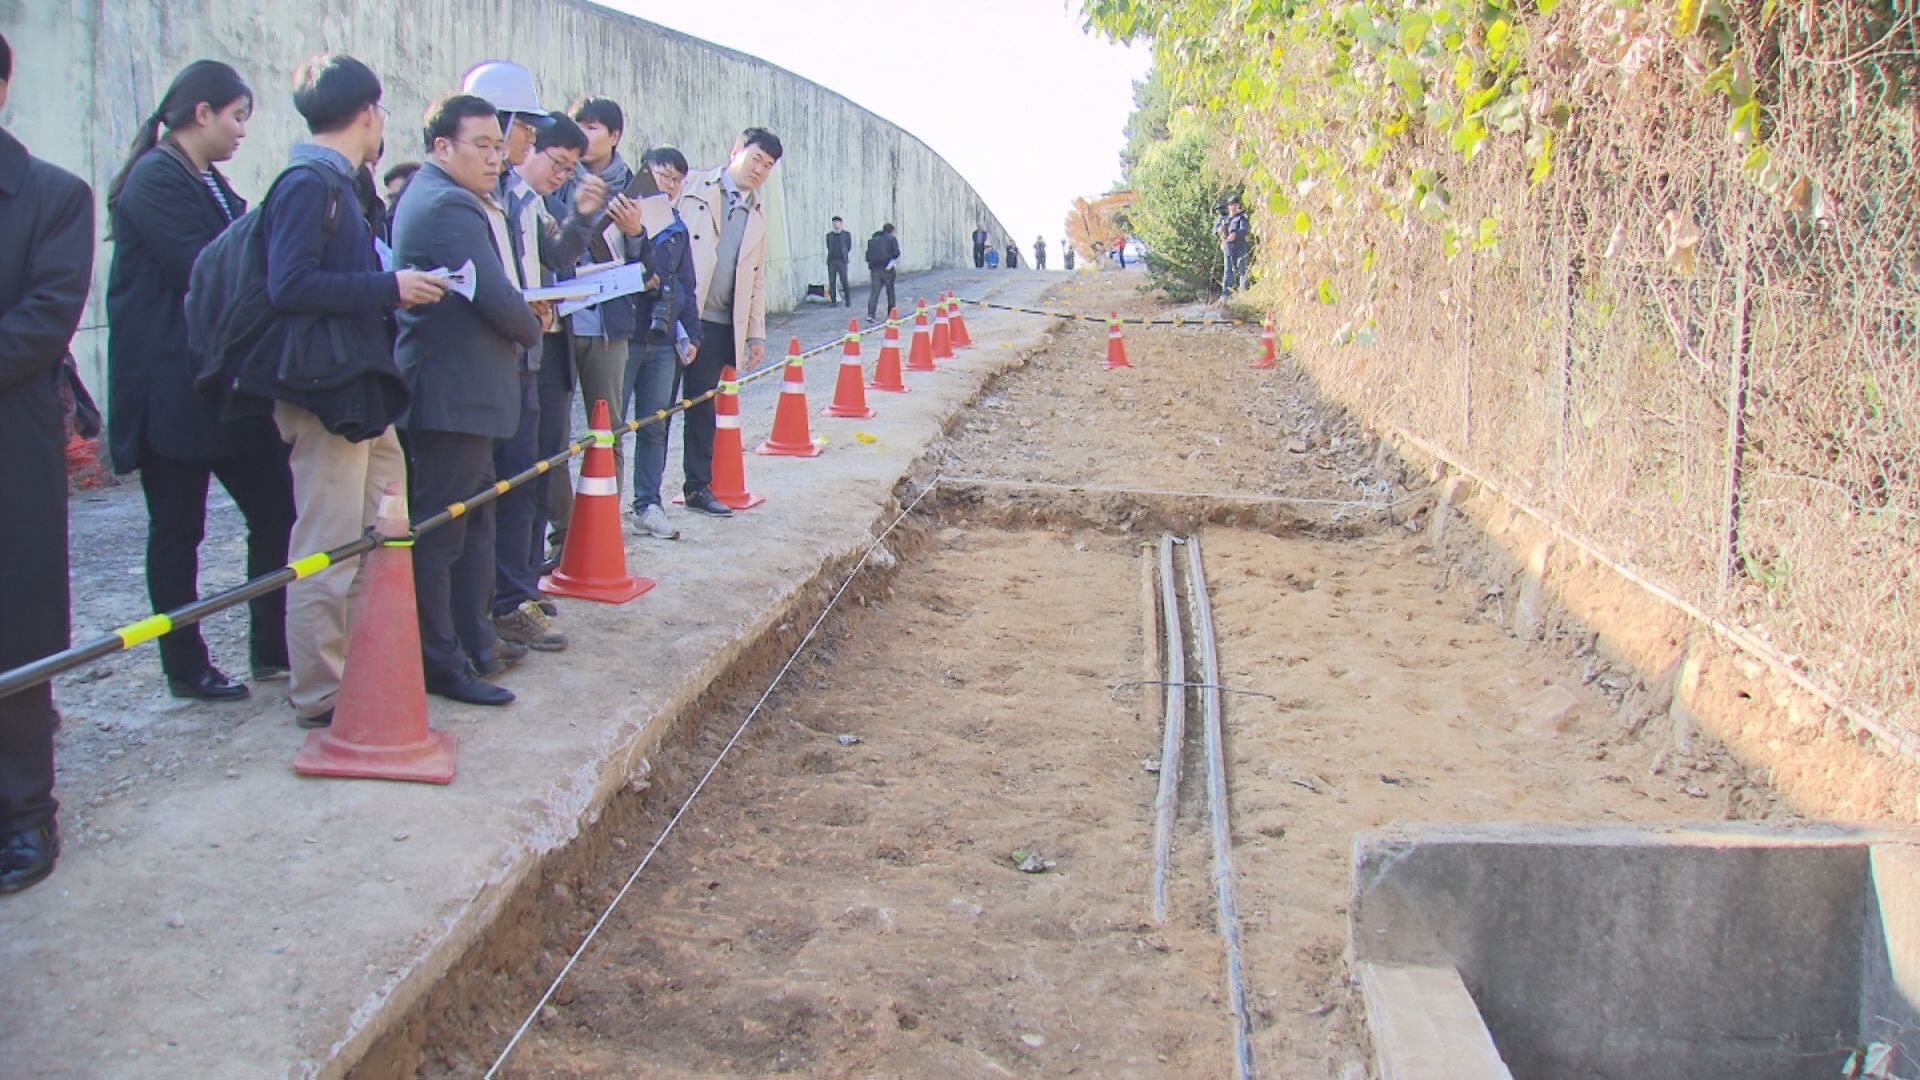 2017년 11월 실시한 5.18 기념재단의 옛 광주교도소 암매장지 발굴 모습.